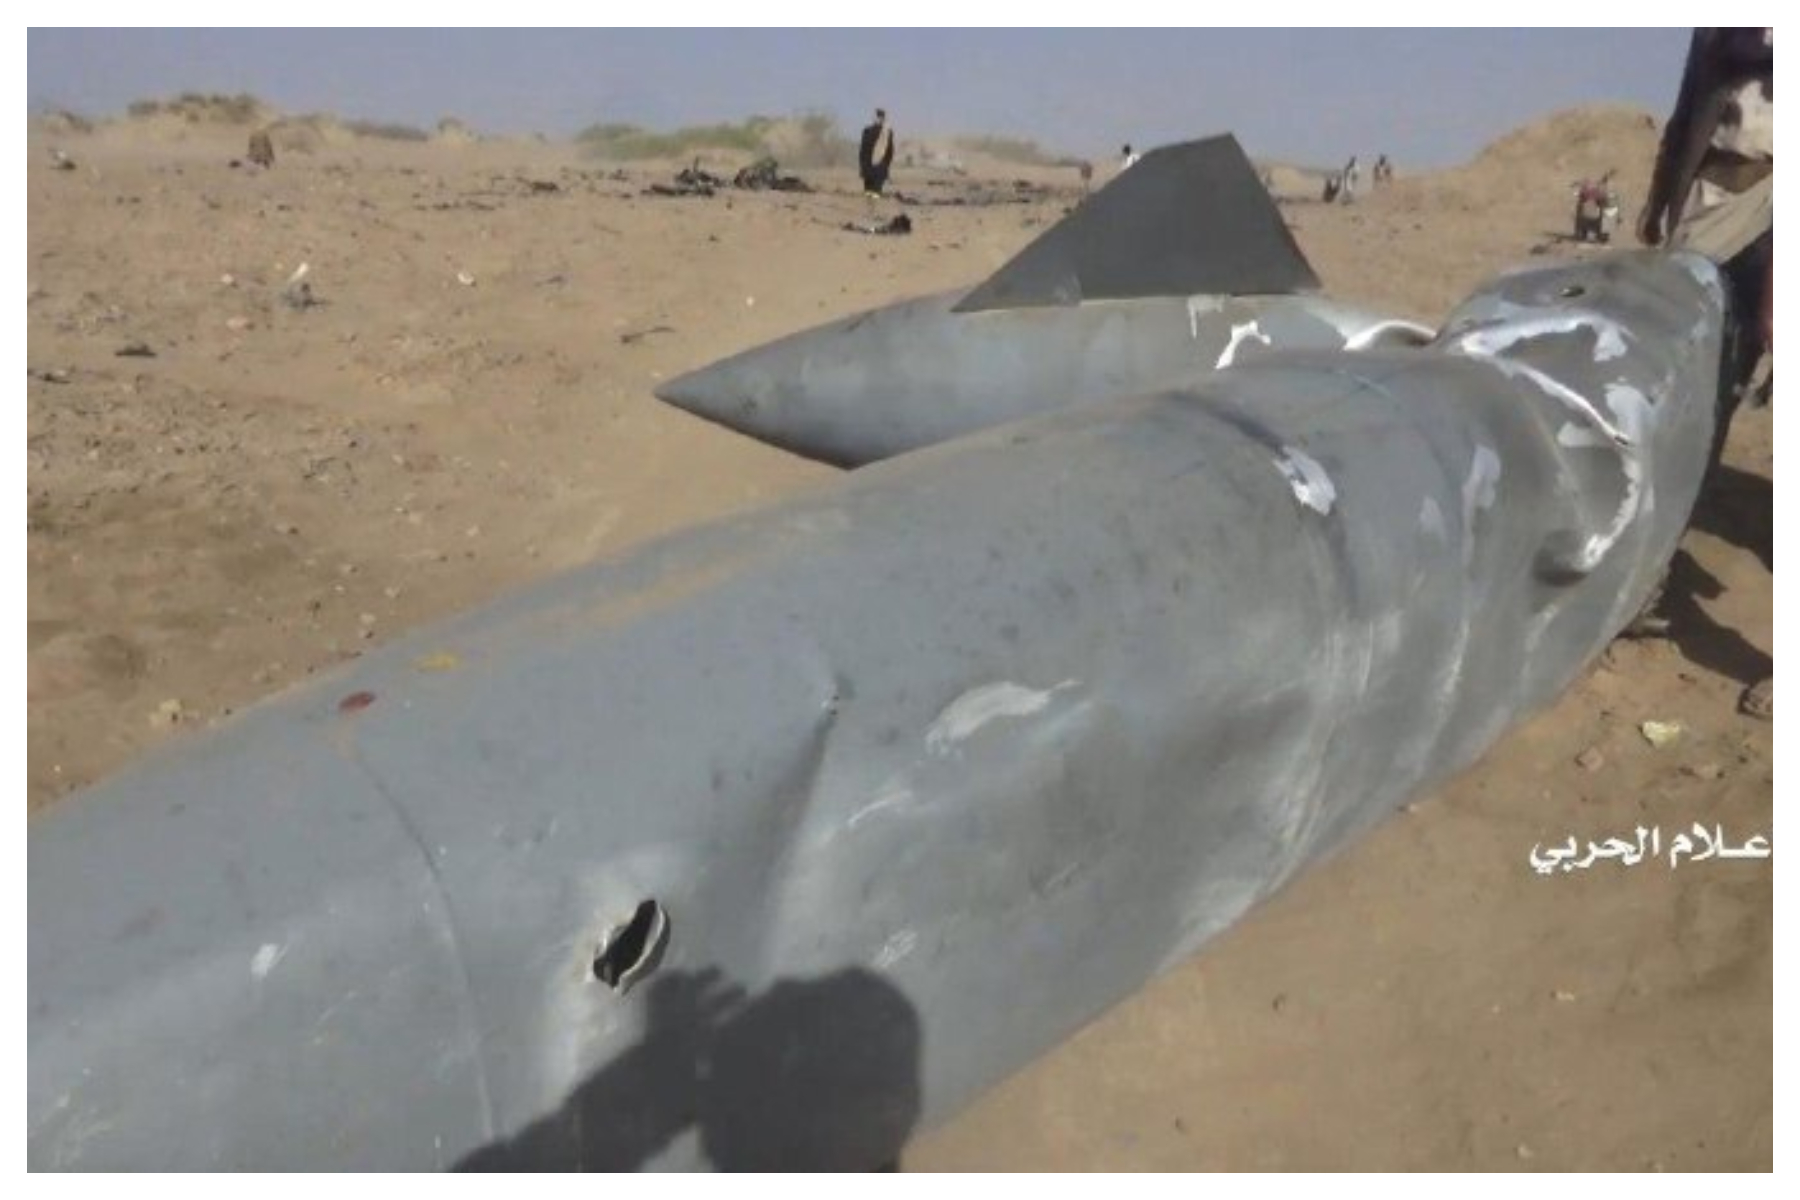 فیلم و تصاویر انهدام جنگنده ائتلاف سعودی در یمن منتشر شد